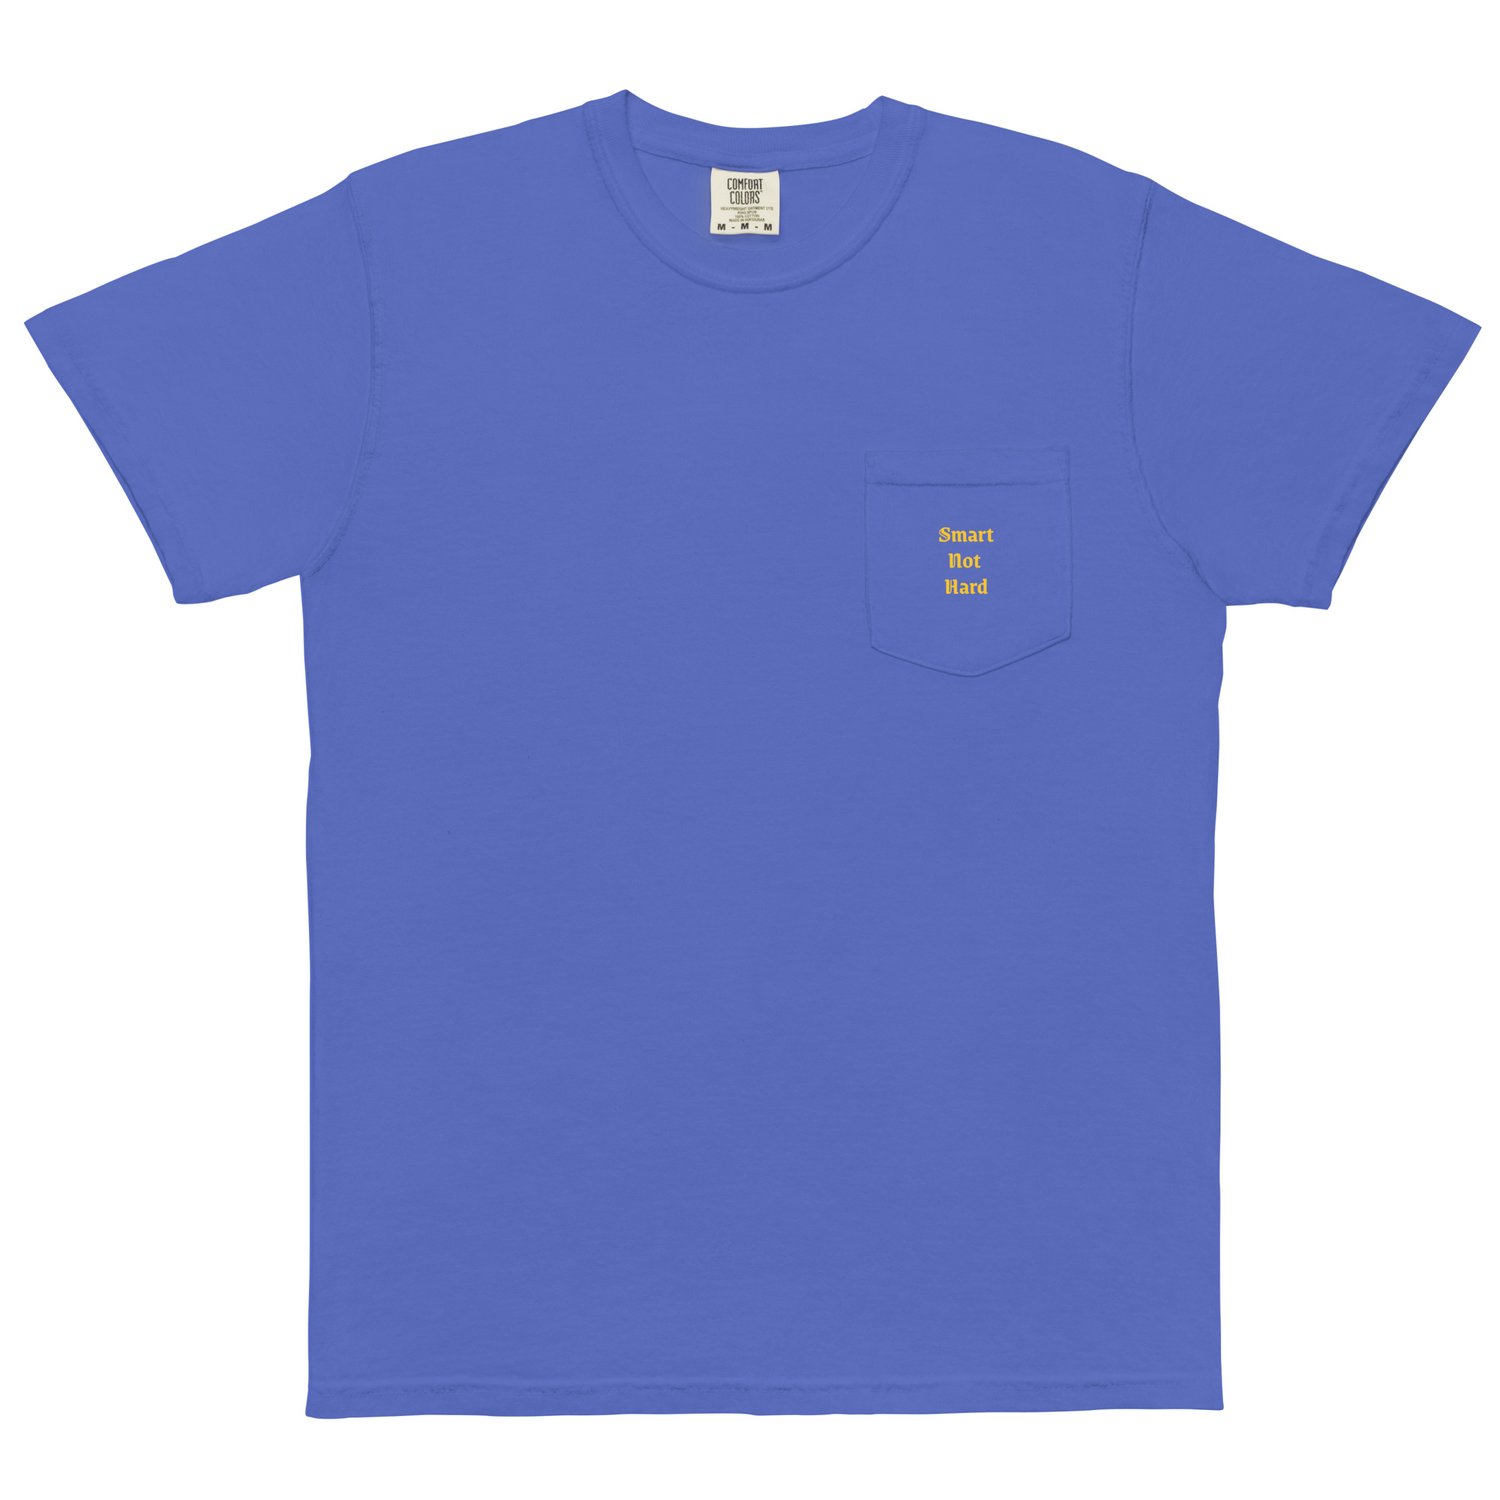 Image of "Smart Not Hard" Unisex garment-dyed pocket t-shirt